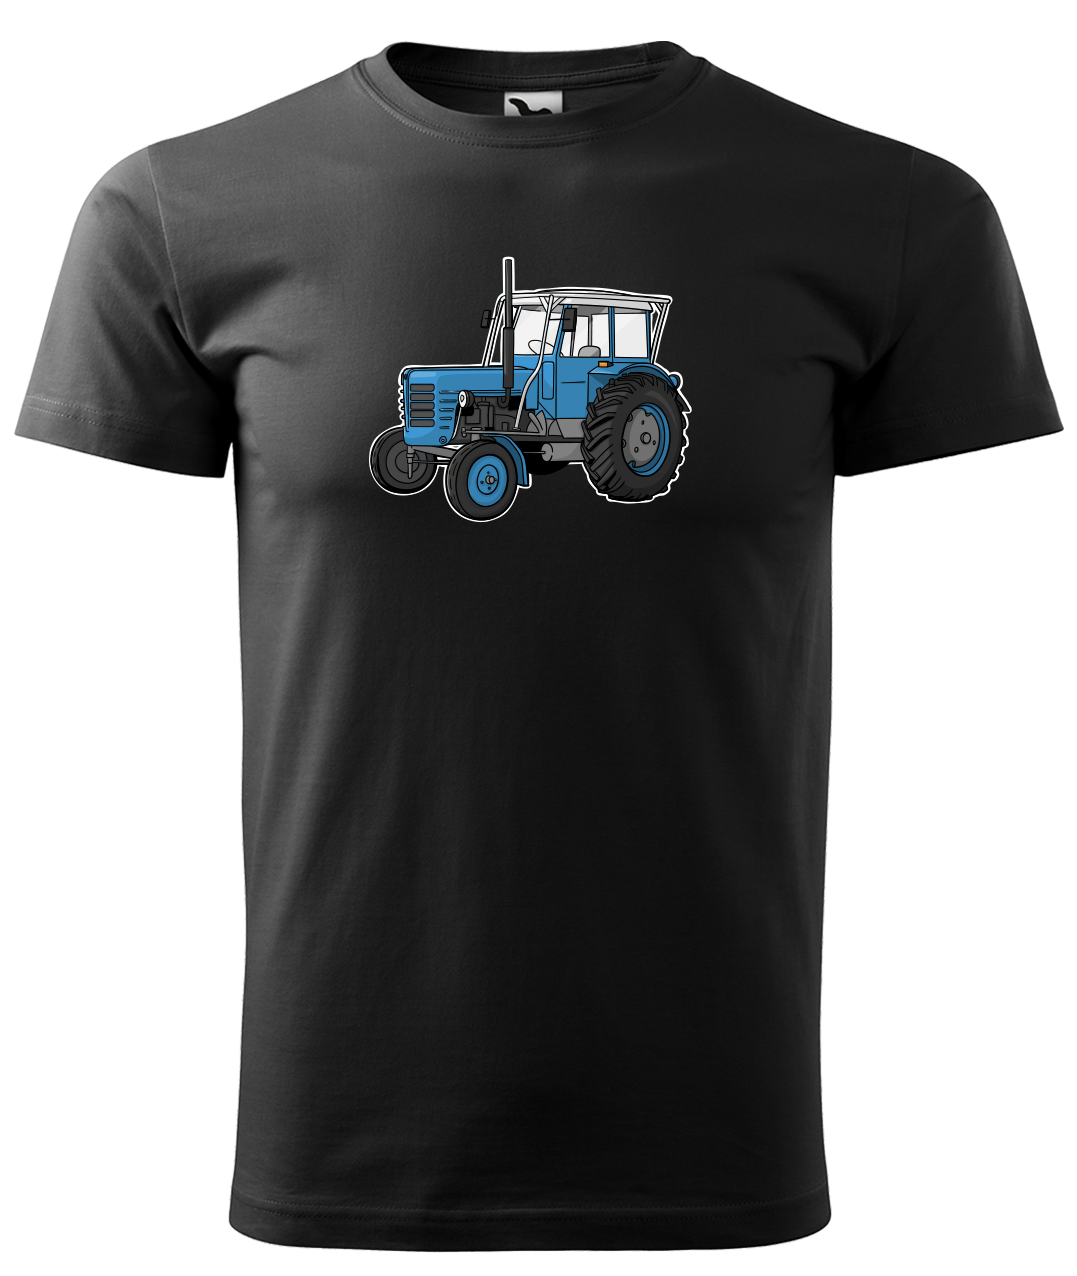 Dětské tričko s traktorem - Starý traktor Velikost: 4 roky / 110 cm, Barva: Černá (01)